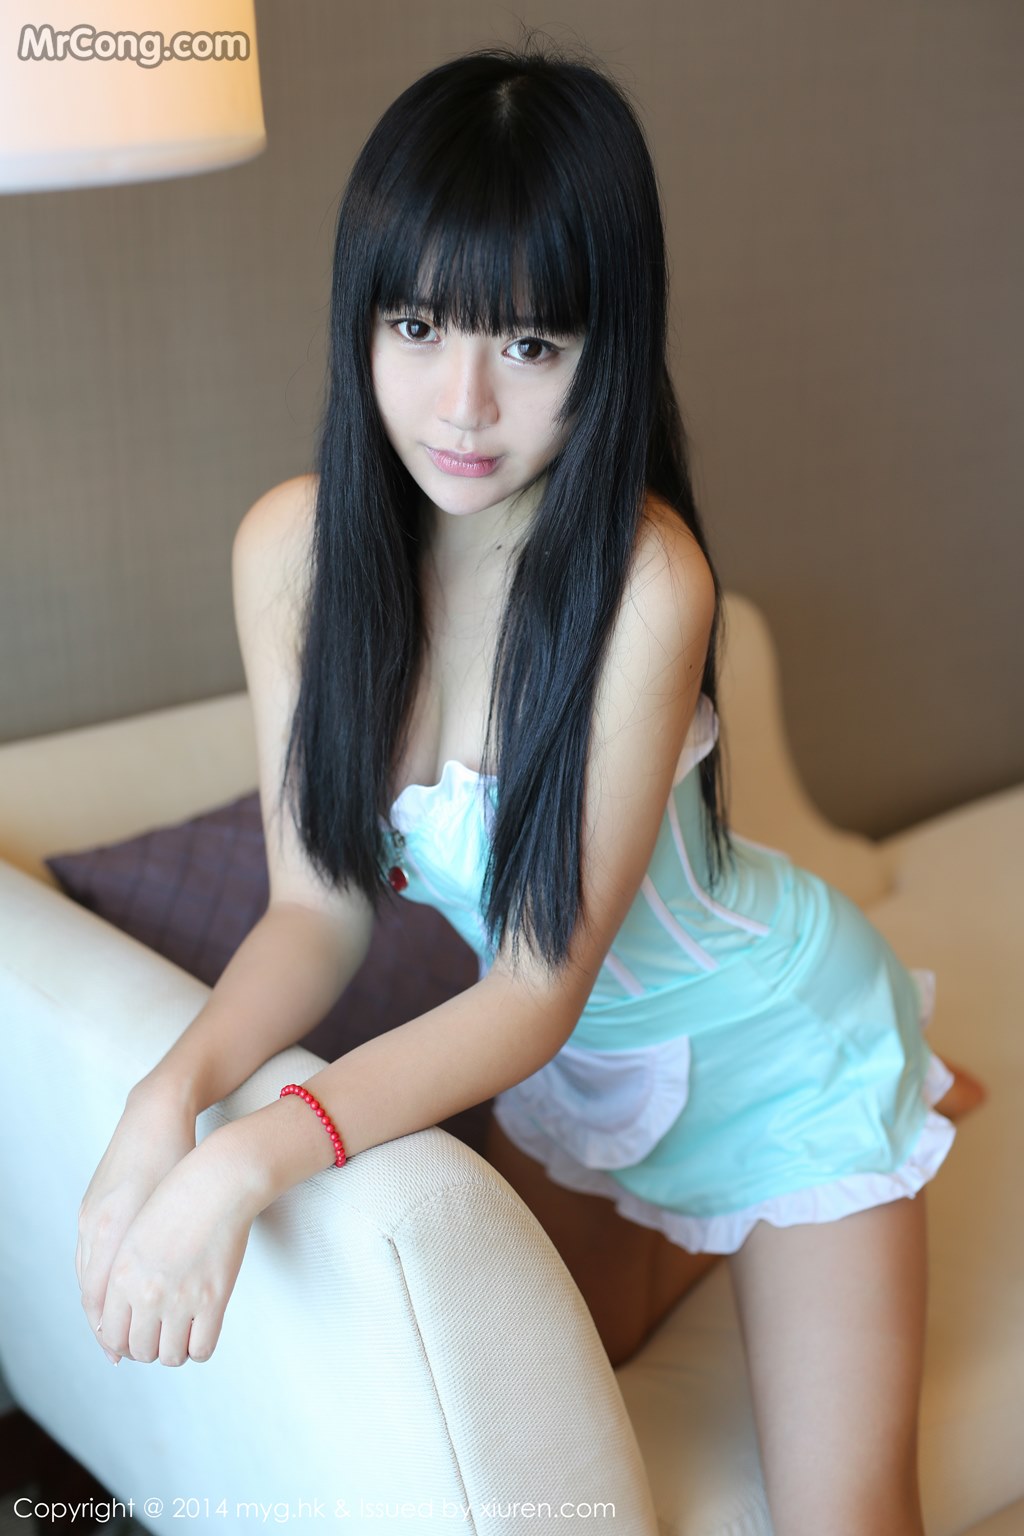 MyGirl Vol.075: Model Ba Bao icey (八宝 icey) (67 photos) photo 4-2